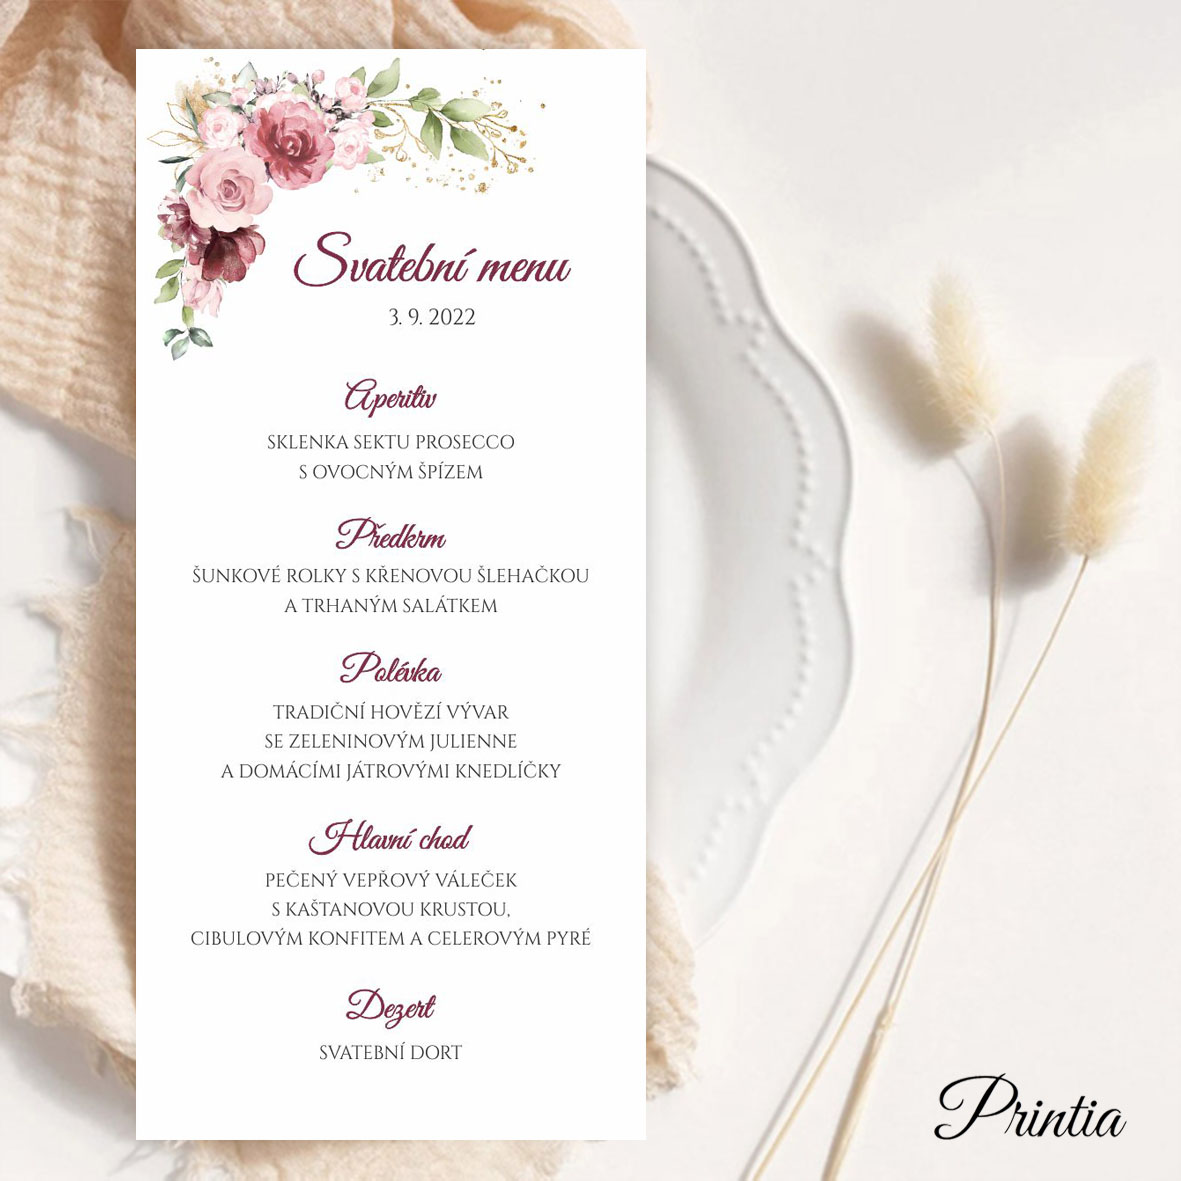 Svatební menu starorůžové s květinami a zlatými prvky